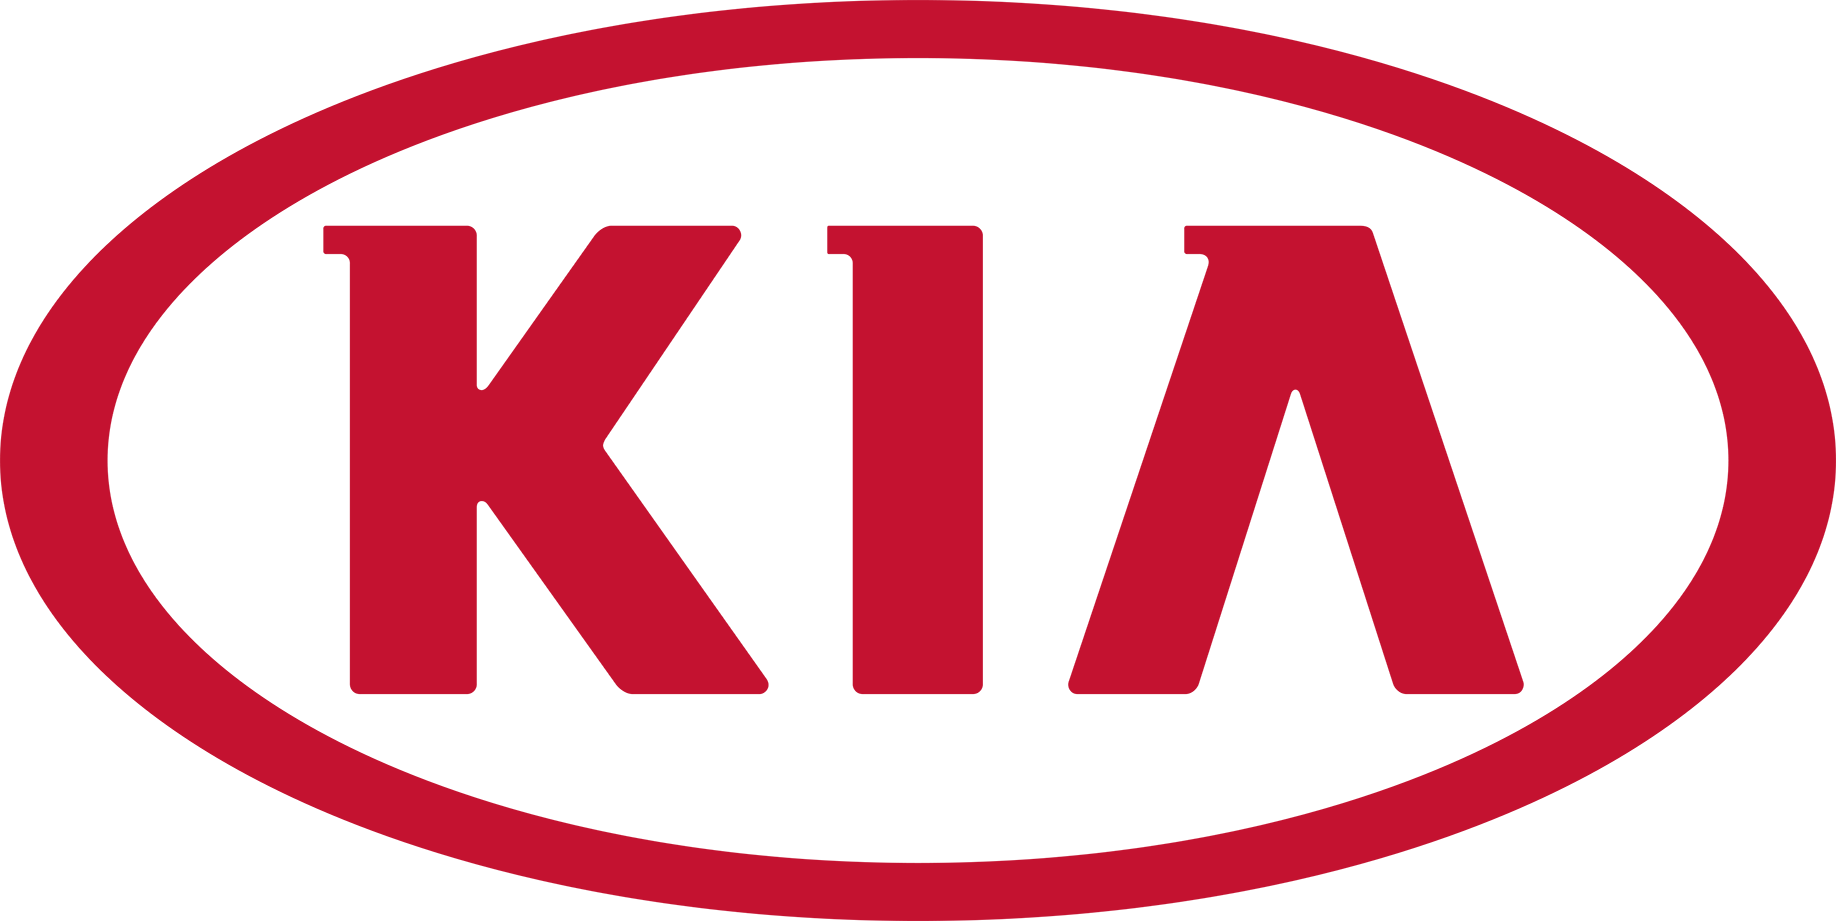 Logo Kia Motors